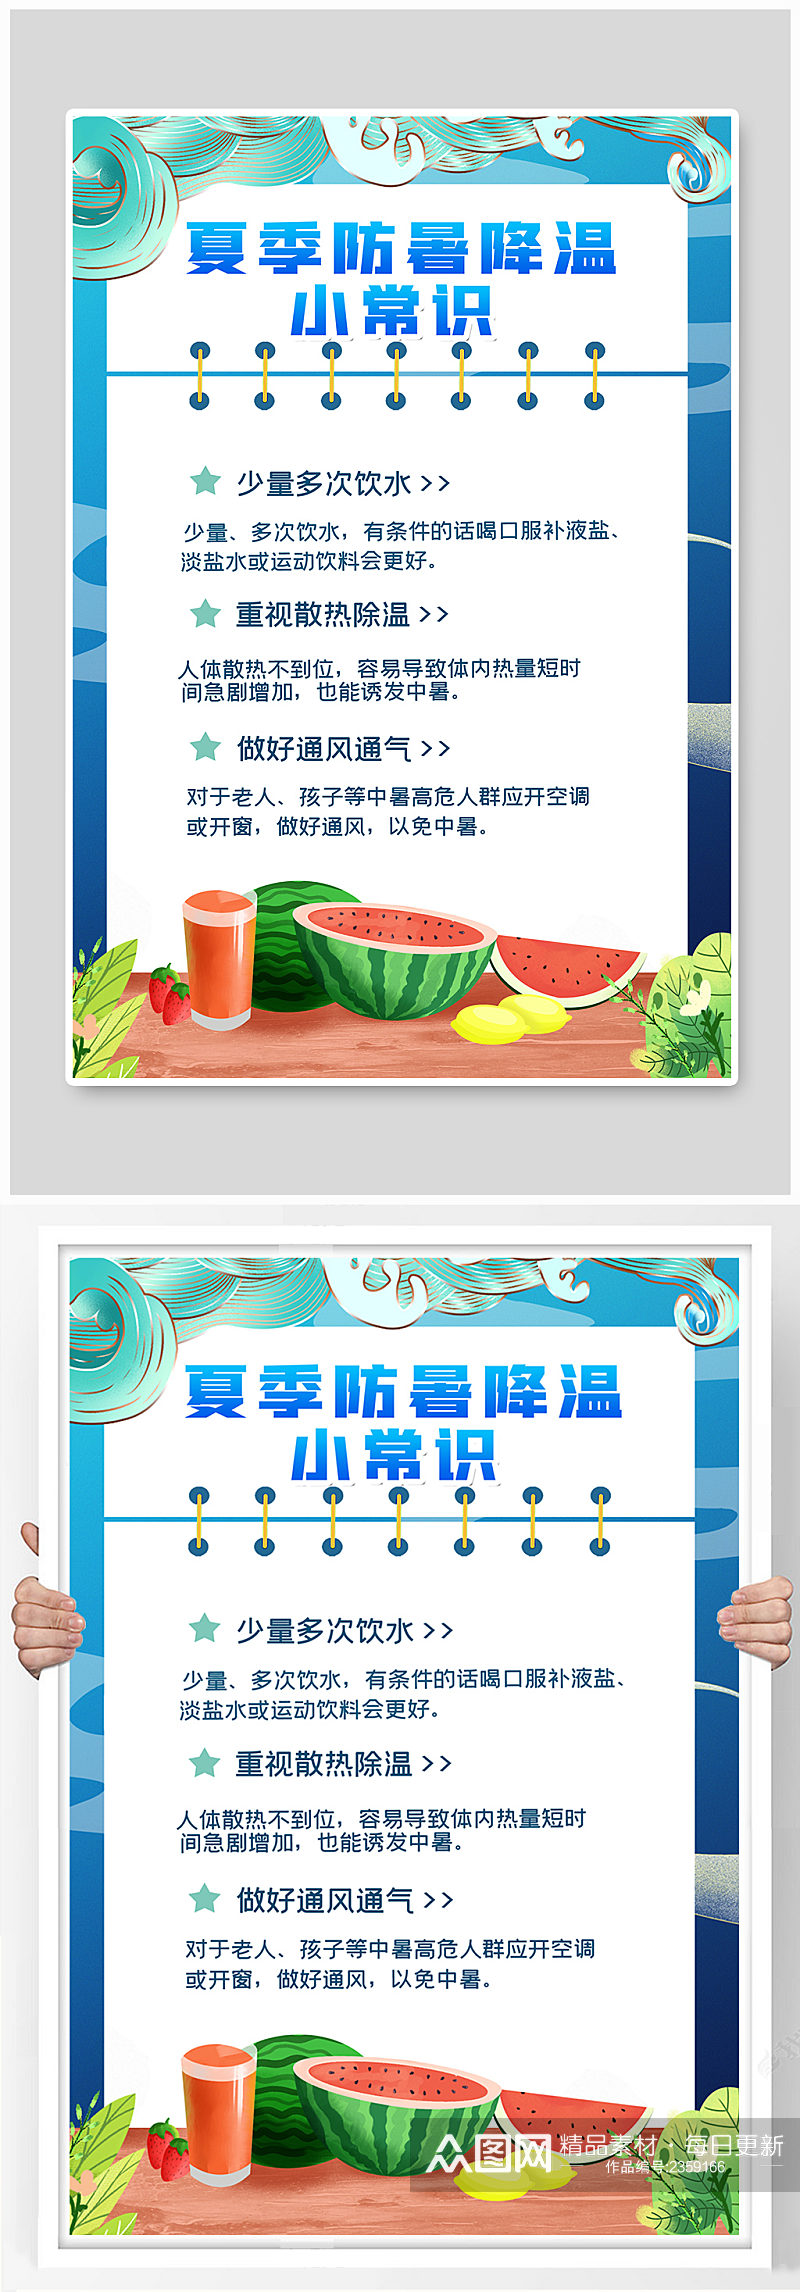 中国风防暑降温小常识宣传海报素材